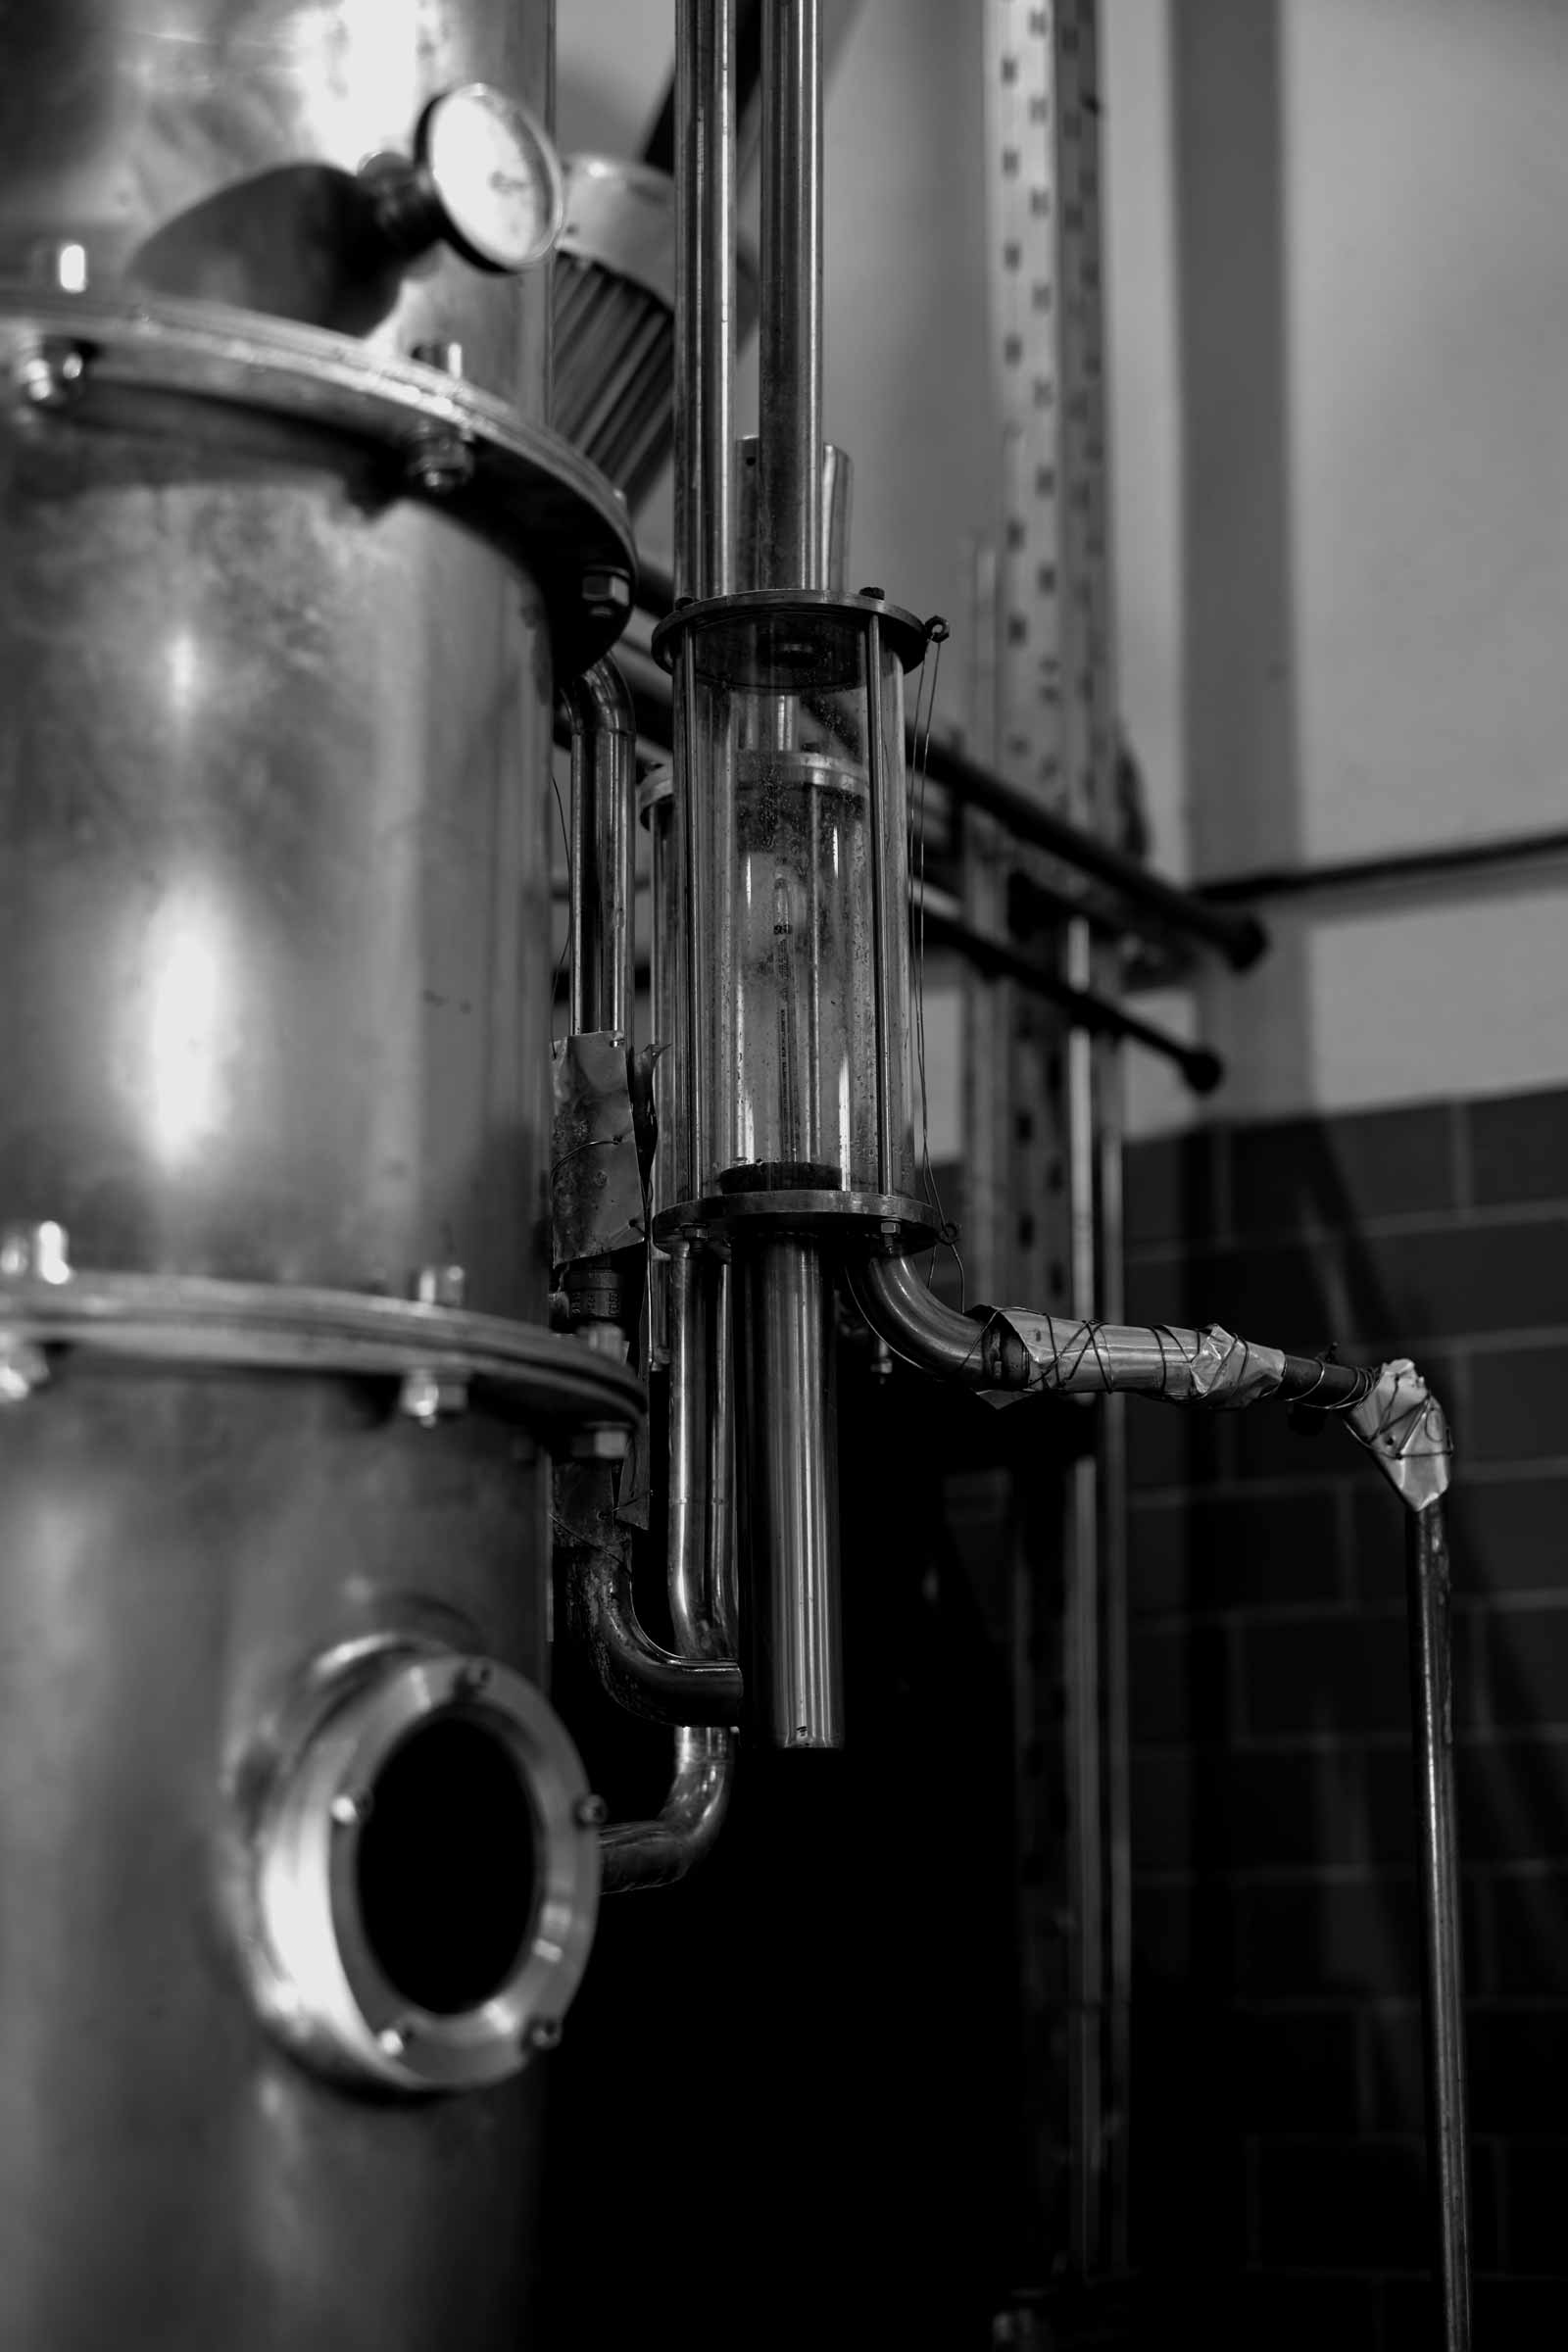 process distillation maschine